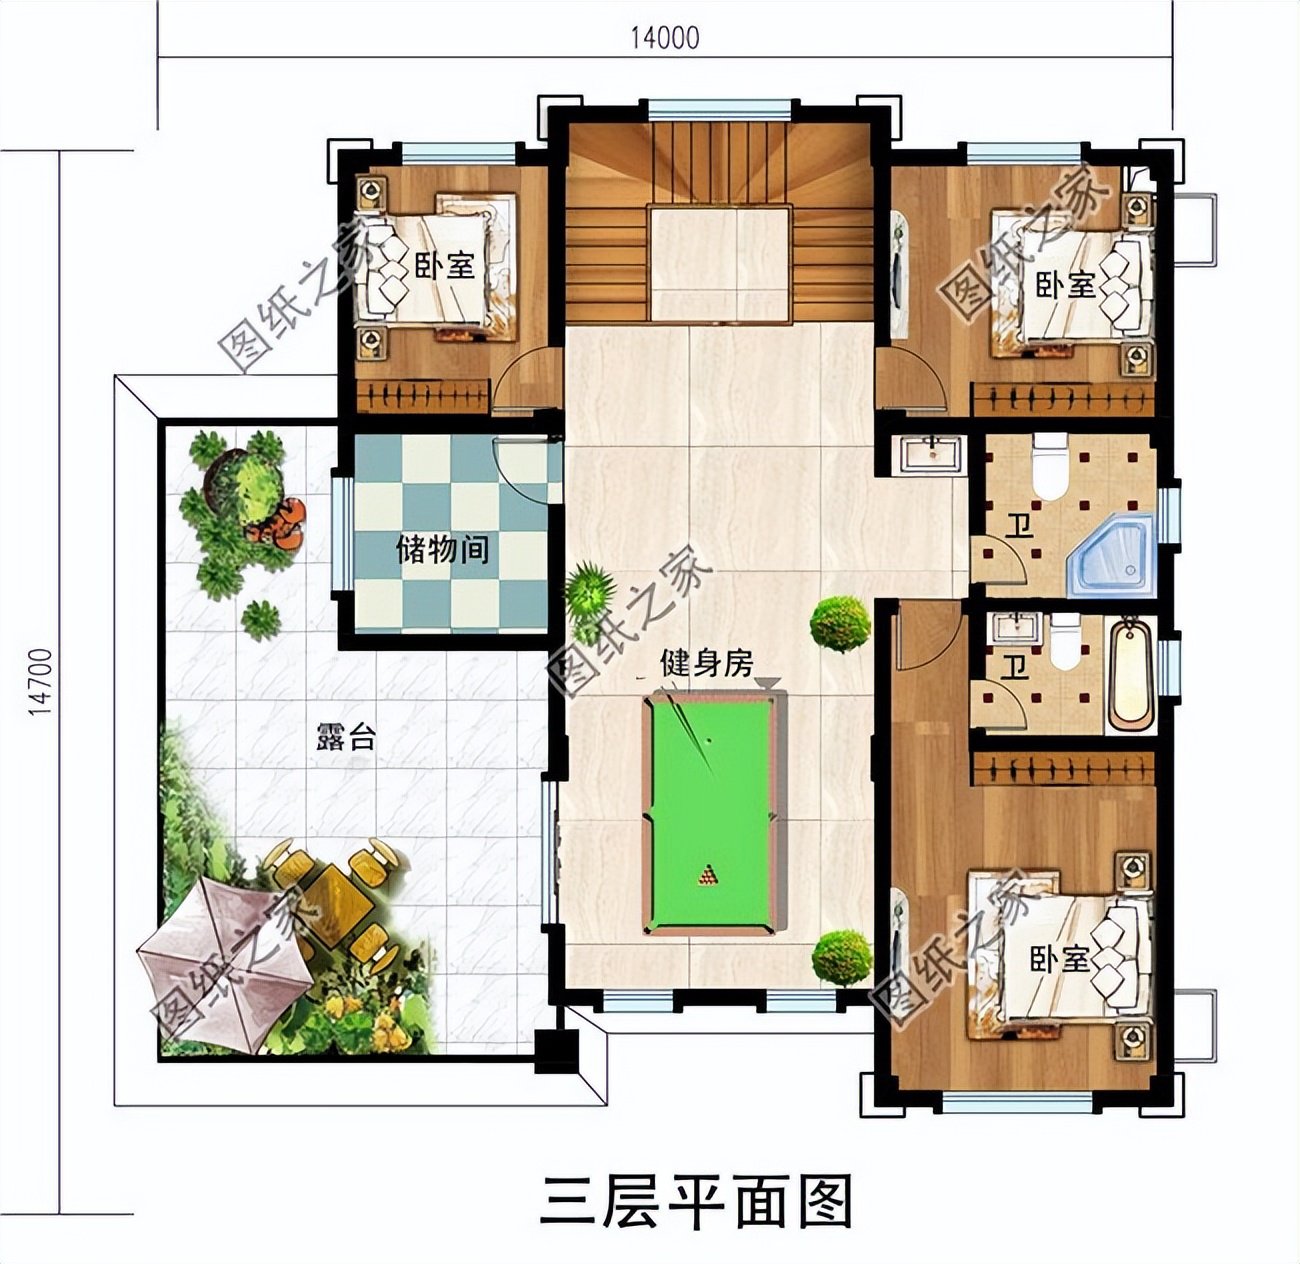 五款新中式别墅设计，外观低调奢华内涵，室内实用舒适宽敞